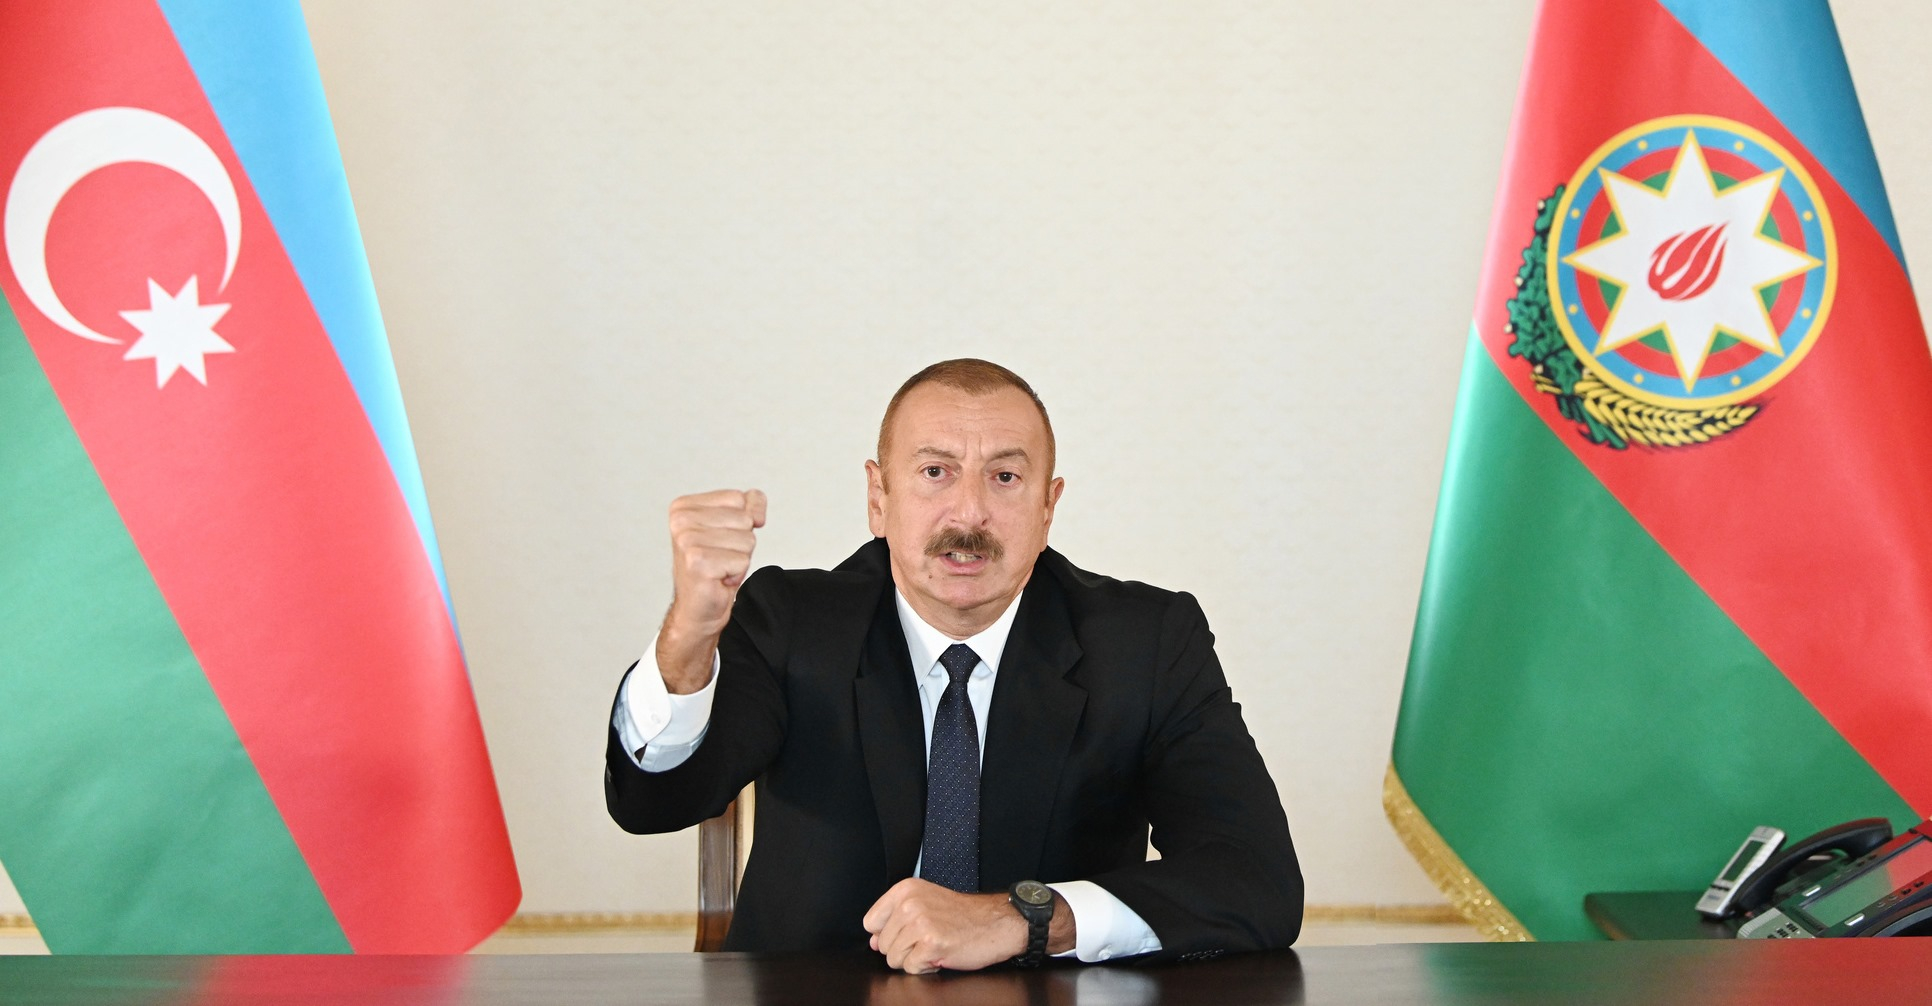 Dövlət başçısı: "Azərbaycan bayrağını bütün işğal edilmiş torpaqlarda qaldıracağıq”